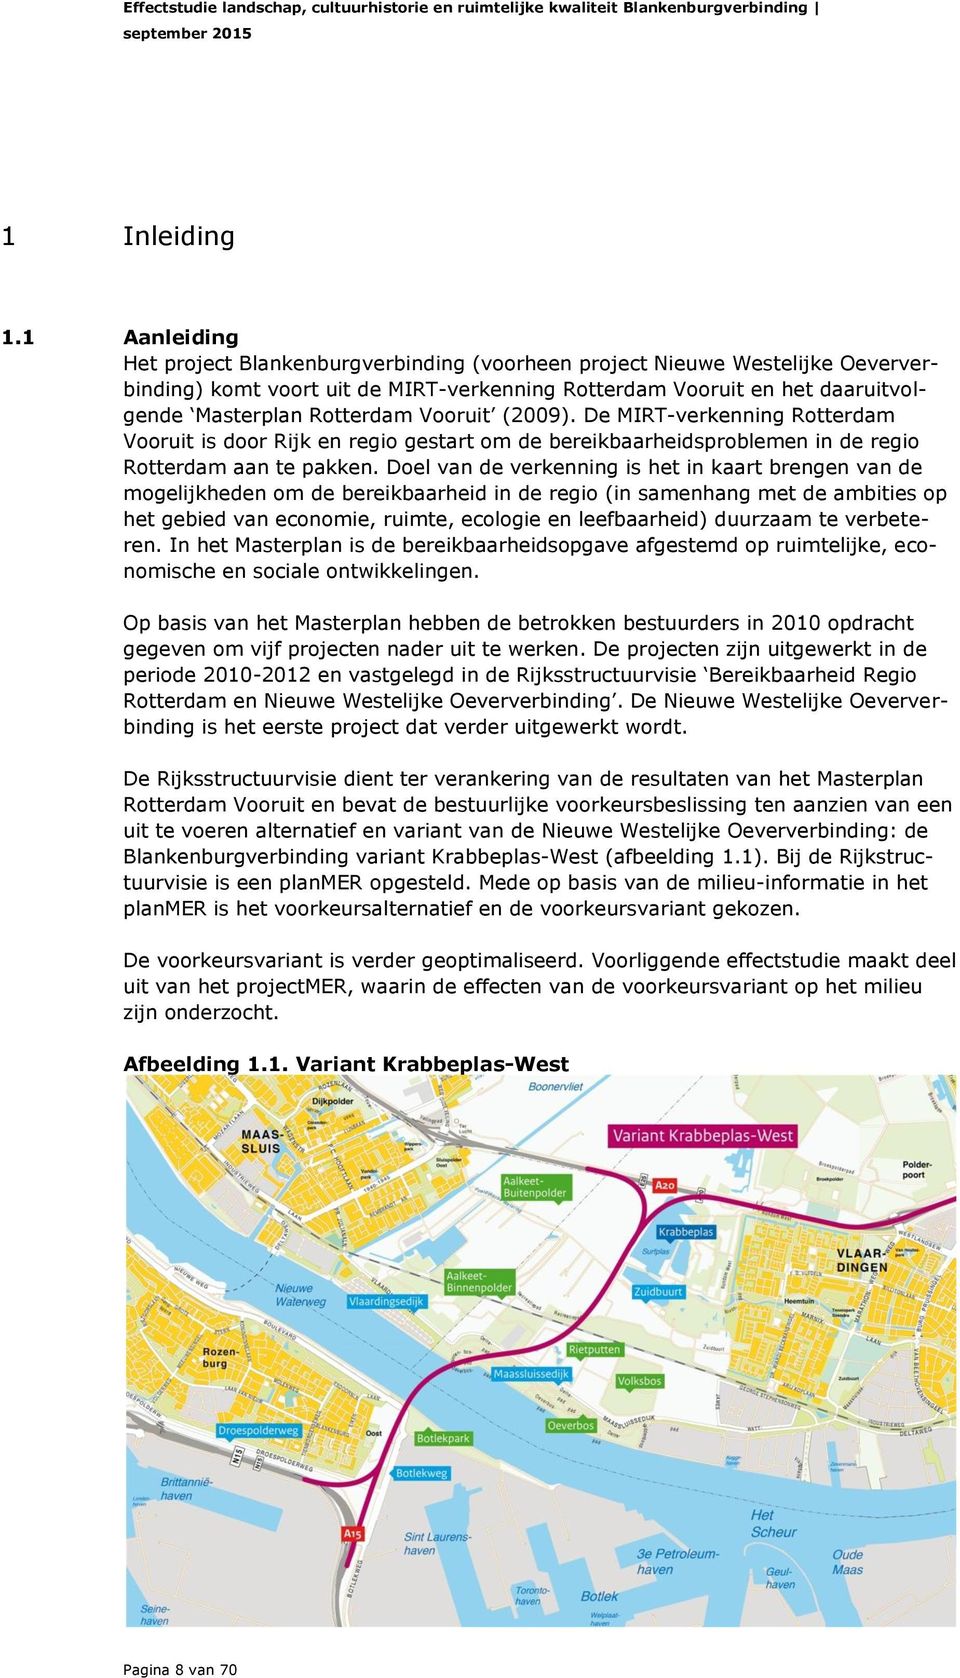 Vooruit (2009). De MIRT-verkenning Rotterdam Vooruit is door Rijk en regio gestart om de bereikbaarheidsproblemen in de regio Rotterdam aan te pakken.